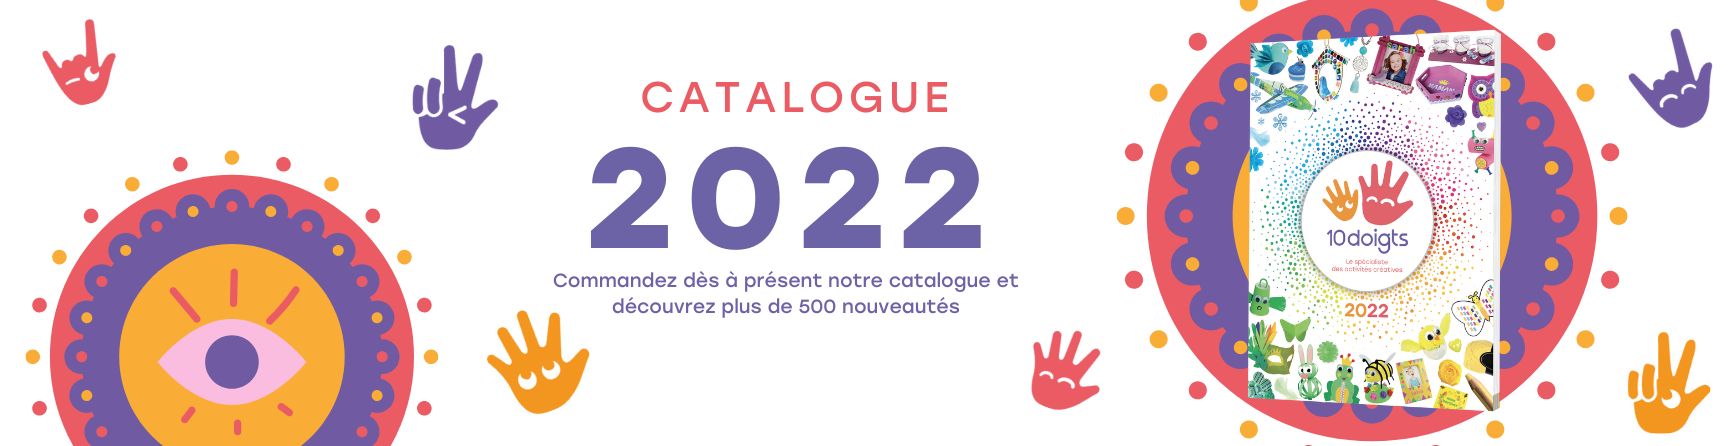 catalogue 2022 en ligne